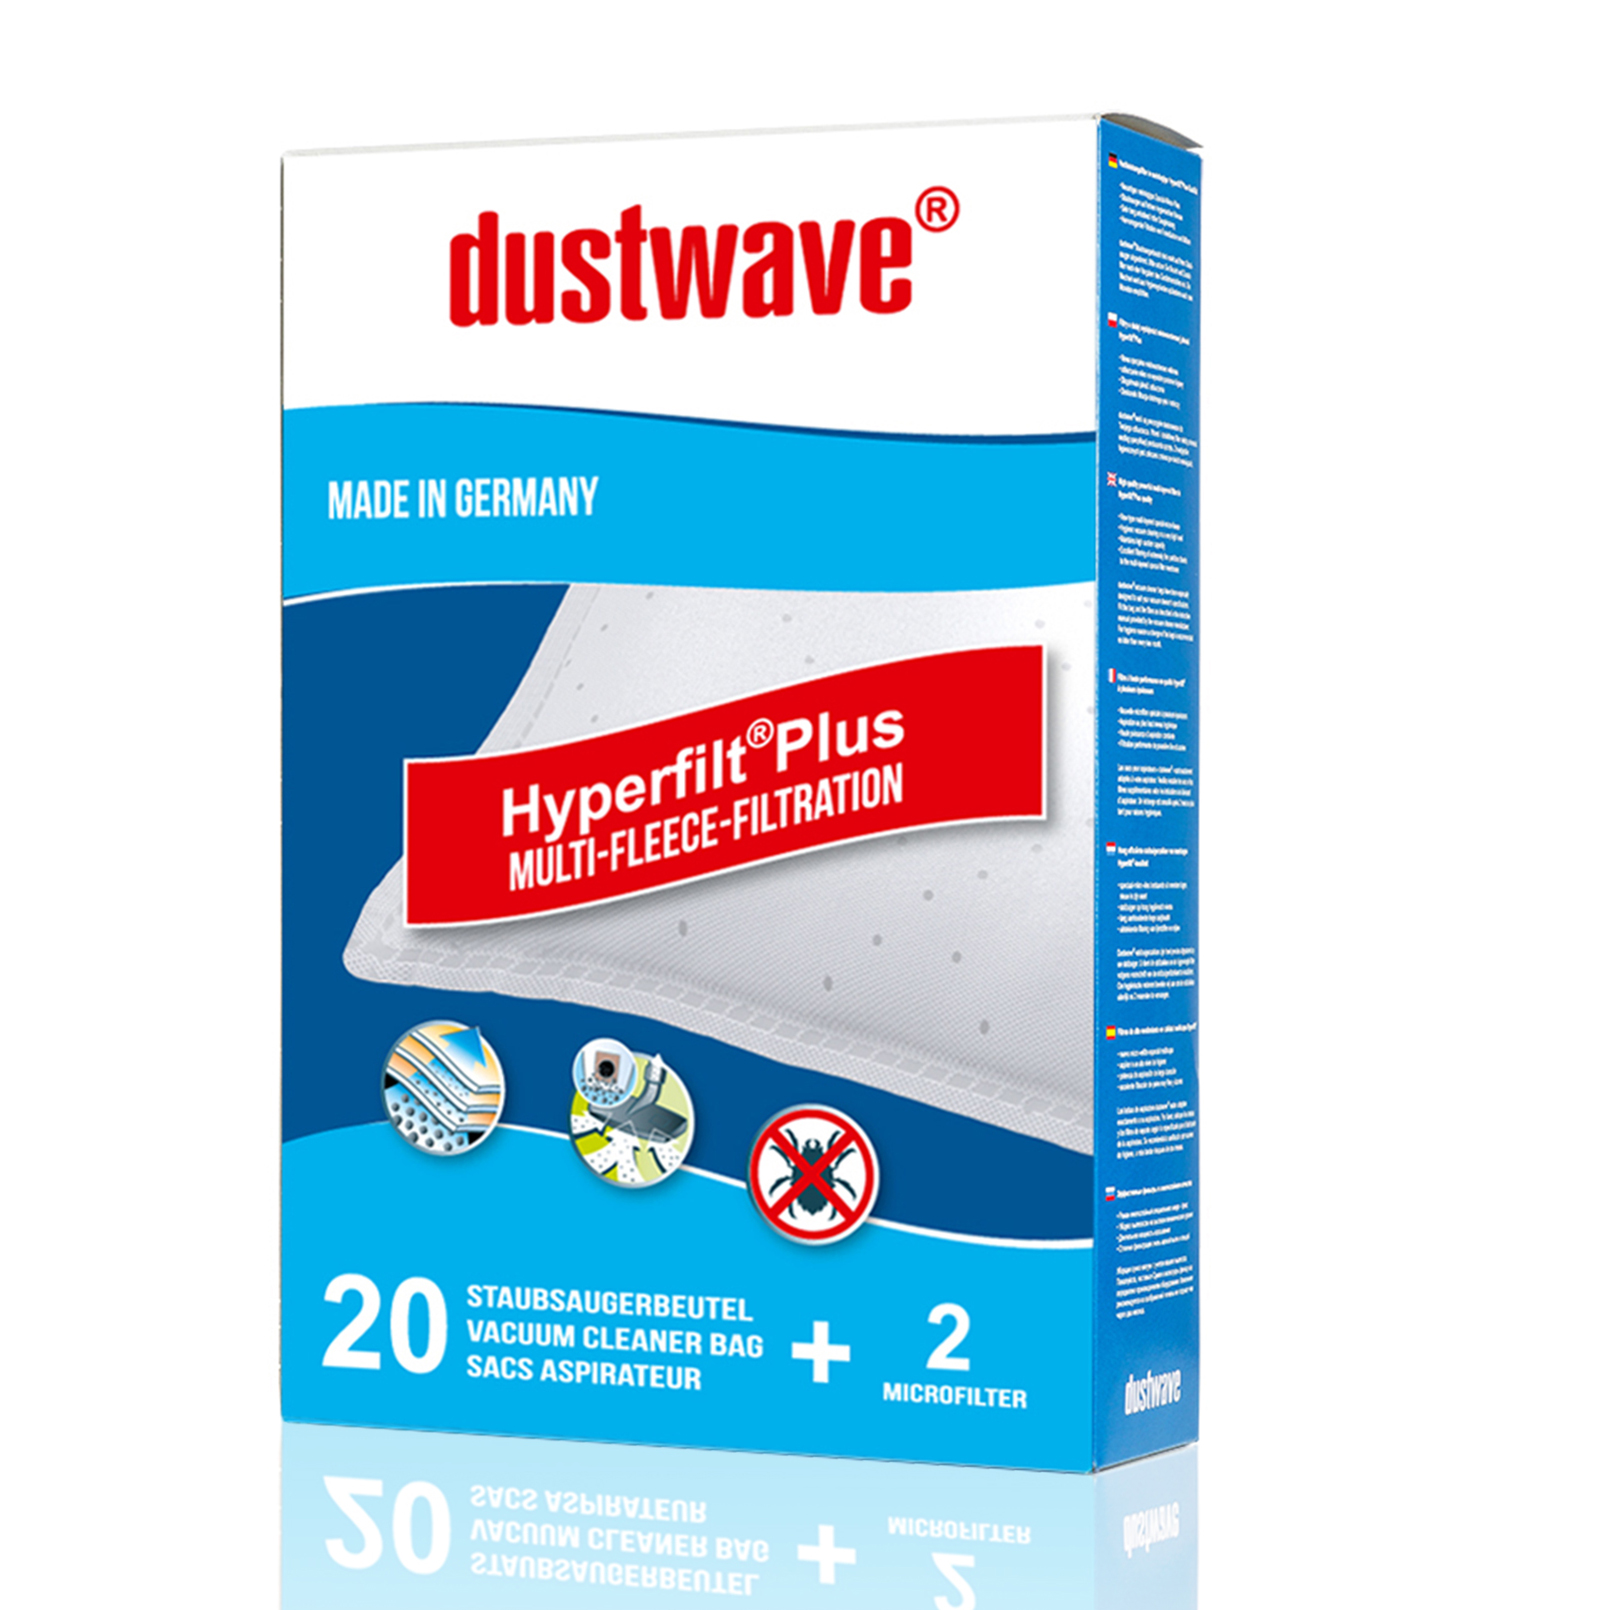 Dustwave® 5 Staubsaugerbeutel für Miele S5 Oeco Plus - hocheffizient, mehrlagiges Mikrovlies mit Hygieneverschluss - Made in Germany